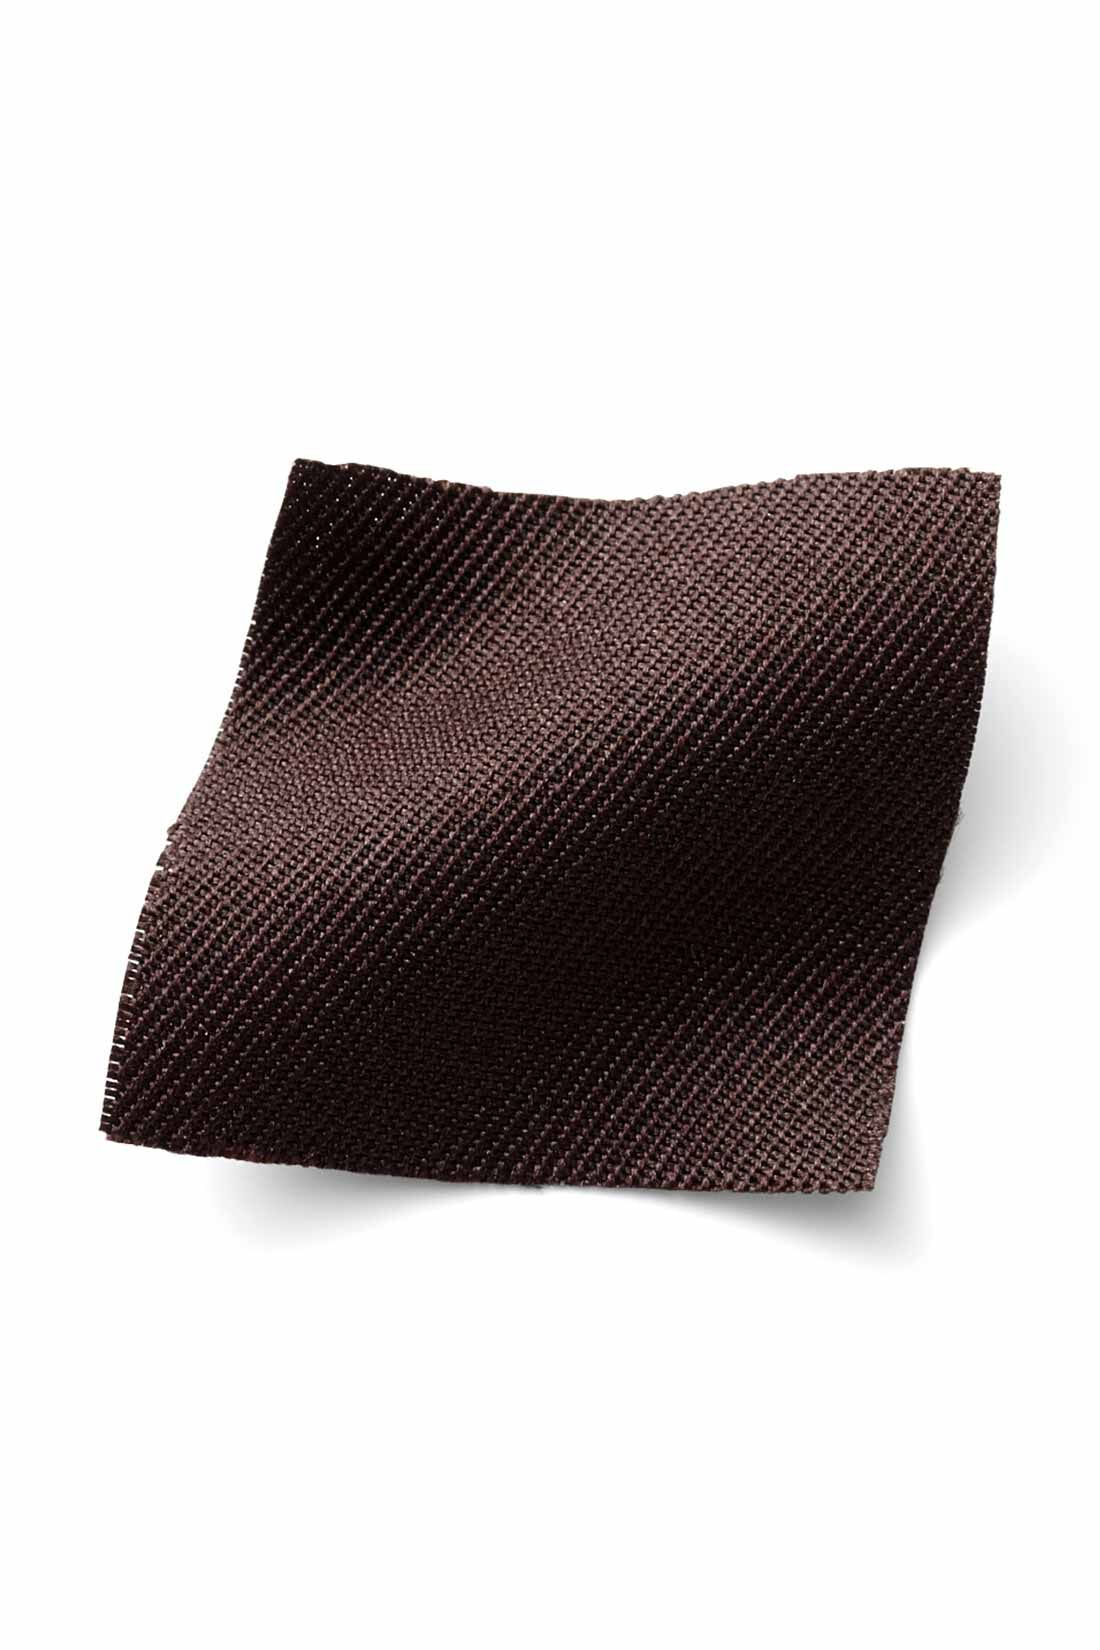 IEDIT[イディット]　着まわし広がる 2-WAY仕様がうれしい大人シルエットのジャンパースカート〈ブラウン〉|季節を問わずはきやすい、ほどよい厚みの布はく素材。